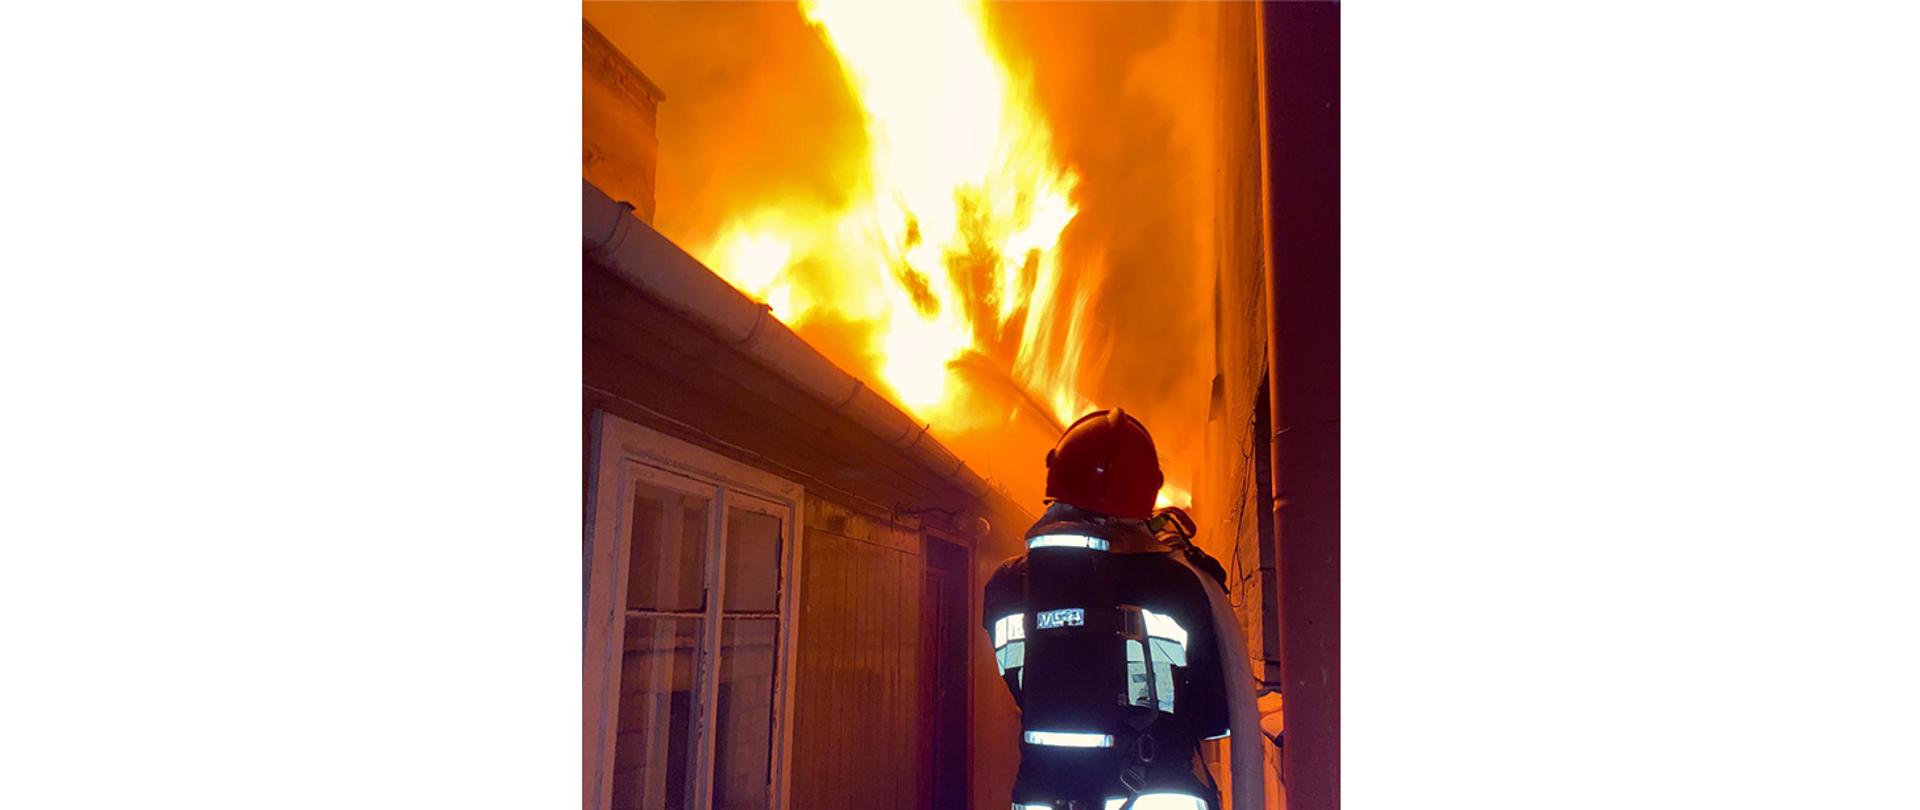 Pożar dwóch domów drewnianych – mieszkalnego i niezamieszkałego w Przasnyszu
7 maja bieżącego roku około godz. 00:40 doszło do pożaru budynku mieszkalnego i drugiego niezamieszkałego w Przasnyszu na ulicy Zawodzie.
W chwili przyjazdu straży pożarnej zastano pożar rozwinięty konstrukcji dachowych na obiektach. Budynek zamieszkiwany był przez dwie starsze osoby dorosłe, które opuściły dom przed przybyciem służb ratowniczych. Ze względu na bardzo zwartą zabudowę pożar przeniósł się na przylegający szczytem sąsiedni niezamieszkany budynek drewniany kryty blachą. Na skutek wysokiej temperatury popękaniu uległy szyby oraz stopieniu ramy okienne w zagrożonym budynku mieszkalnym – murowanym w odległości około 2 metrów, budynek ten zamieszkiwały dwie osoby, które ewakuowały się przed przybyciem służb. Żadne osoby nie odniosły obrażeń.
Strażacy po dokonaniu rozpoznania, zabezpieczeniu miejsca zdarzenia i odłączeniu zasilania elektrycznego w obiektach przystąpili do działań gaśniczych. Ratownicy zabezpieczeni w aparaty ochrony dróg oddechowych podali prądy wody w natarciu na palące się oba budynki drewniane oraz jeden prąd wody w obronie na budynek murowany.
W międzyczasie wewnątrz budynków odnaleziono butle z gazem propan-butan, które wyniesiono w bezpieczne miejsce i schłodzono je wodą. Po ugaszeniu pożaru dokonano niezbędnych prac rozbiórkowych konstrukcji dachowych budynków drewnianych w celu uzyskania dostępu do wszystkich zarzewi ognia i przelaniu wodą nadpalonych elementów konstrukcji. Na koniec obiekty sprawdzono kamerą termowizyjną w celu wykluczenia dodatkowych zagrożeń - nie stwierdzono dodatkowych zagrożeń pożarowych.
W działaniach udział brało 6 zastępów straży pożarnej: 3x JRG Przasnysz, OSP Bogate, OSP Obrąb i OSP Mchowo.
________________________________________
Opracował: asp. Sekuna Rafał.
Zdjęcia: KP PSP Przasnysz.
